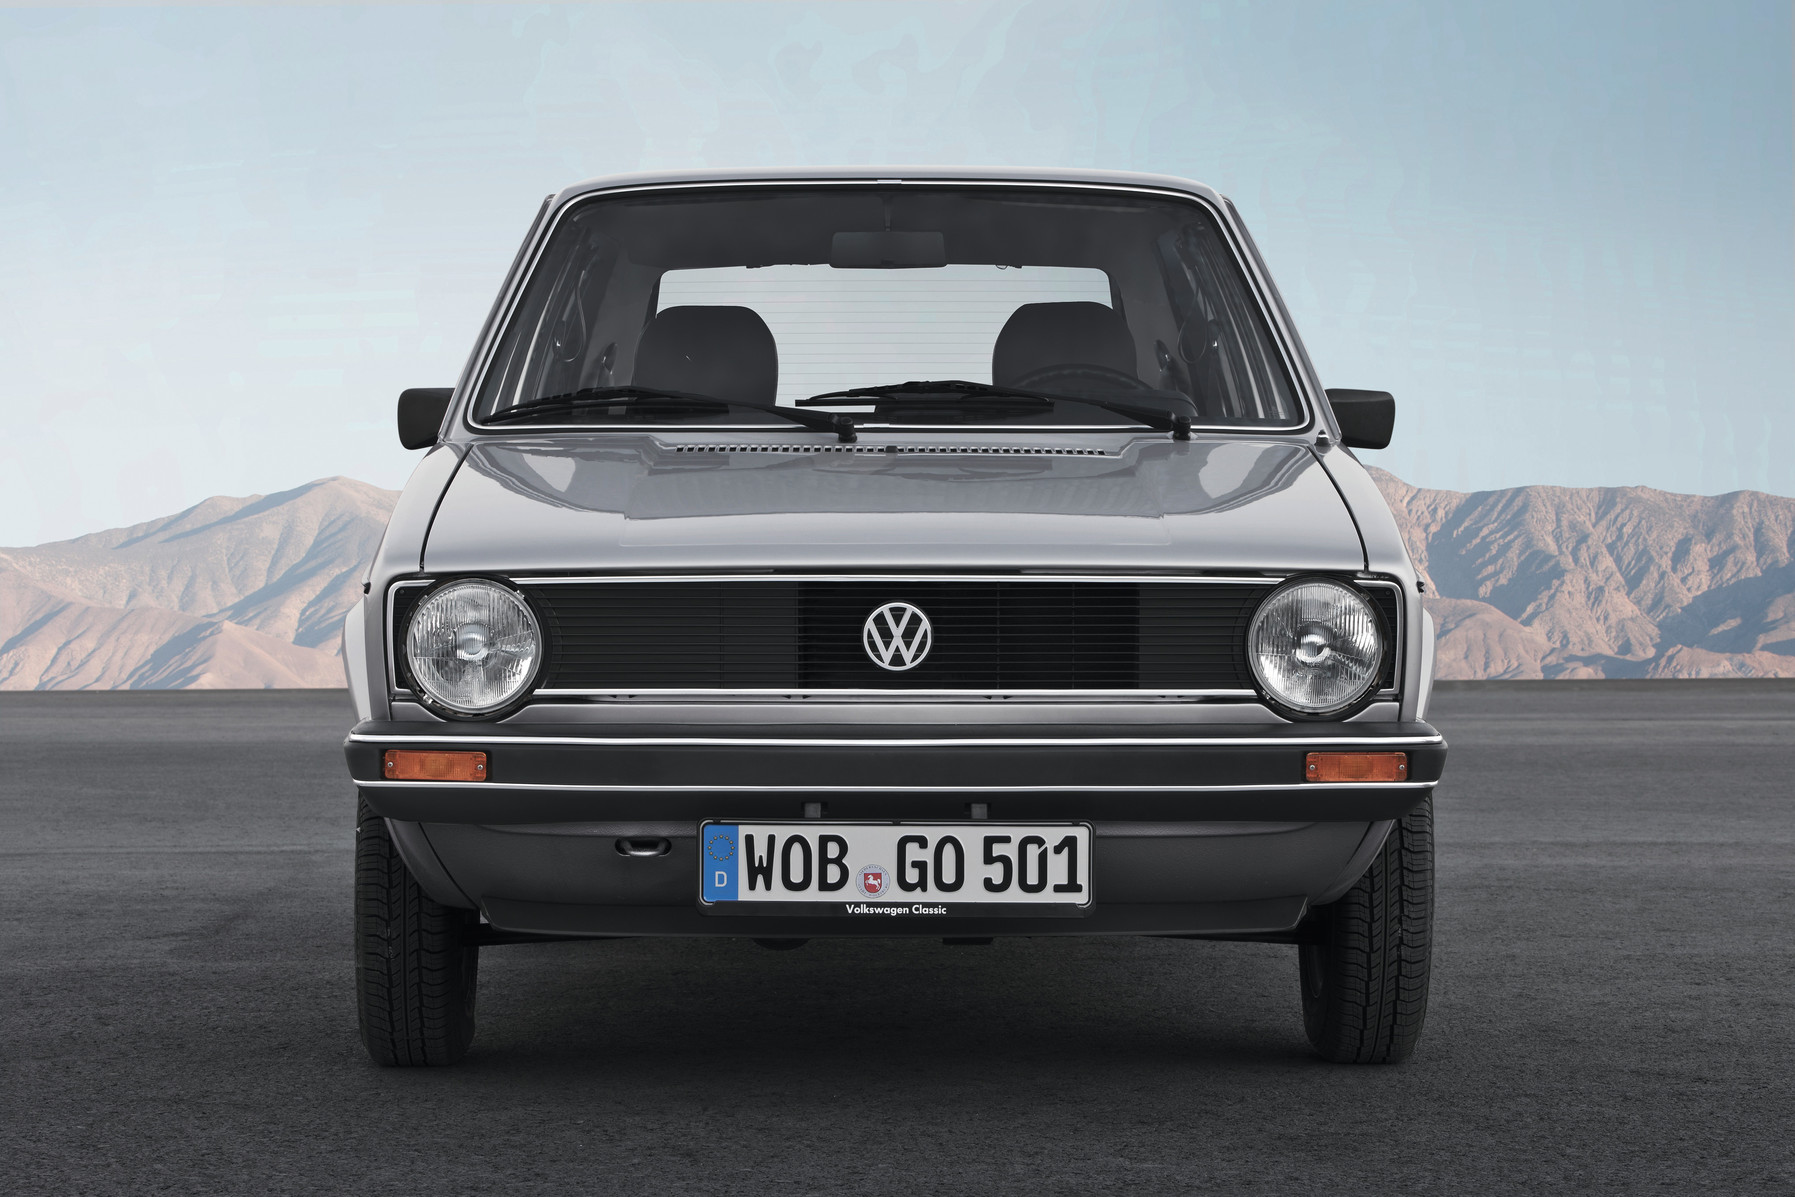 Volkswagen The Golf 暢銷半世紀 奠定掀背車代名詞傳奇經典車款  8 世代造就璀璨時刻